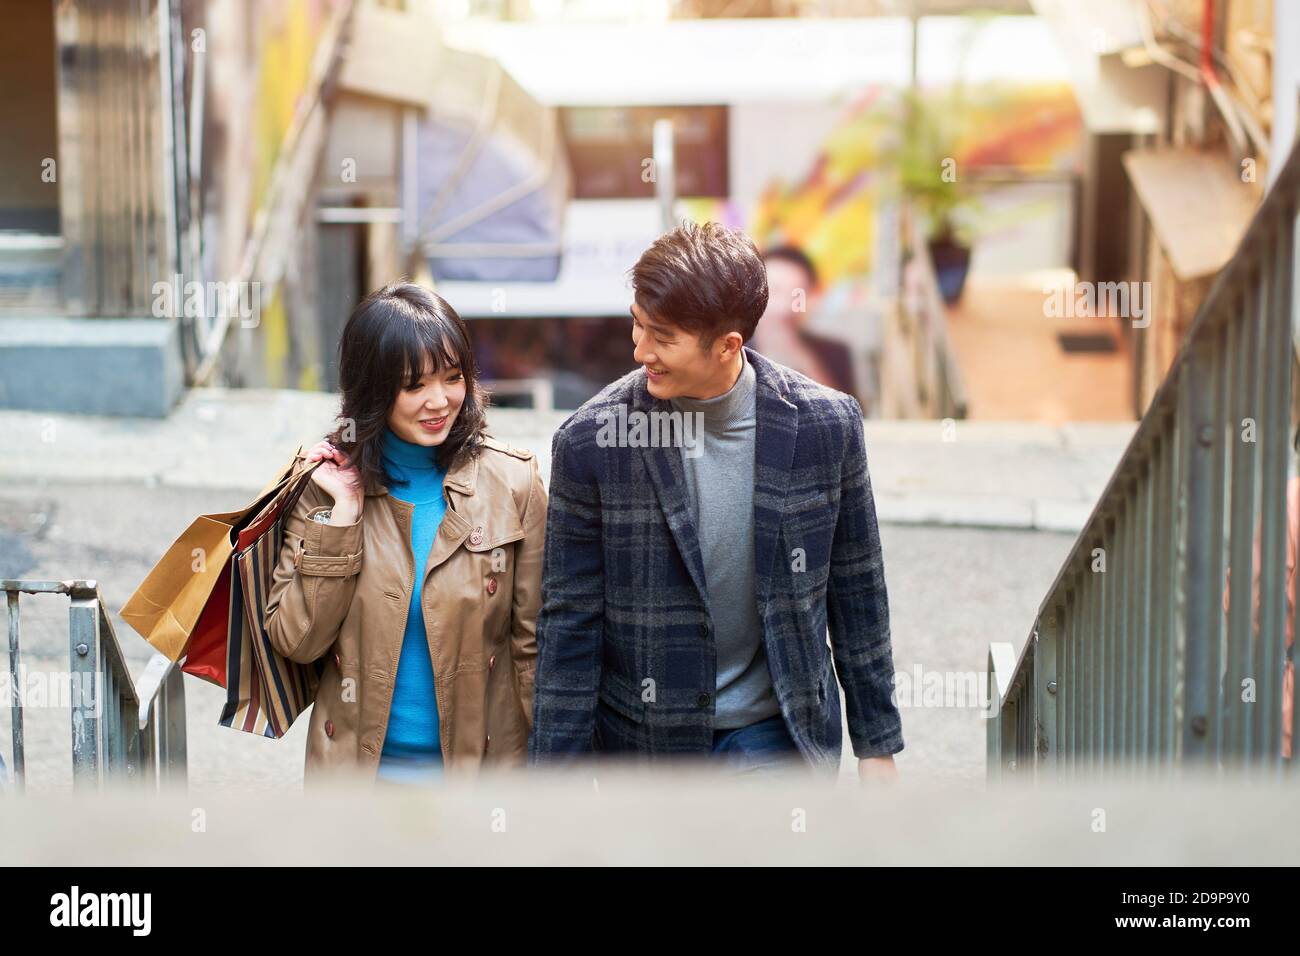 Glücklich junge asiatische Paar zu Fuß im Gespräch mit Einkaufstaschen in Hand Stockfoto